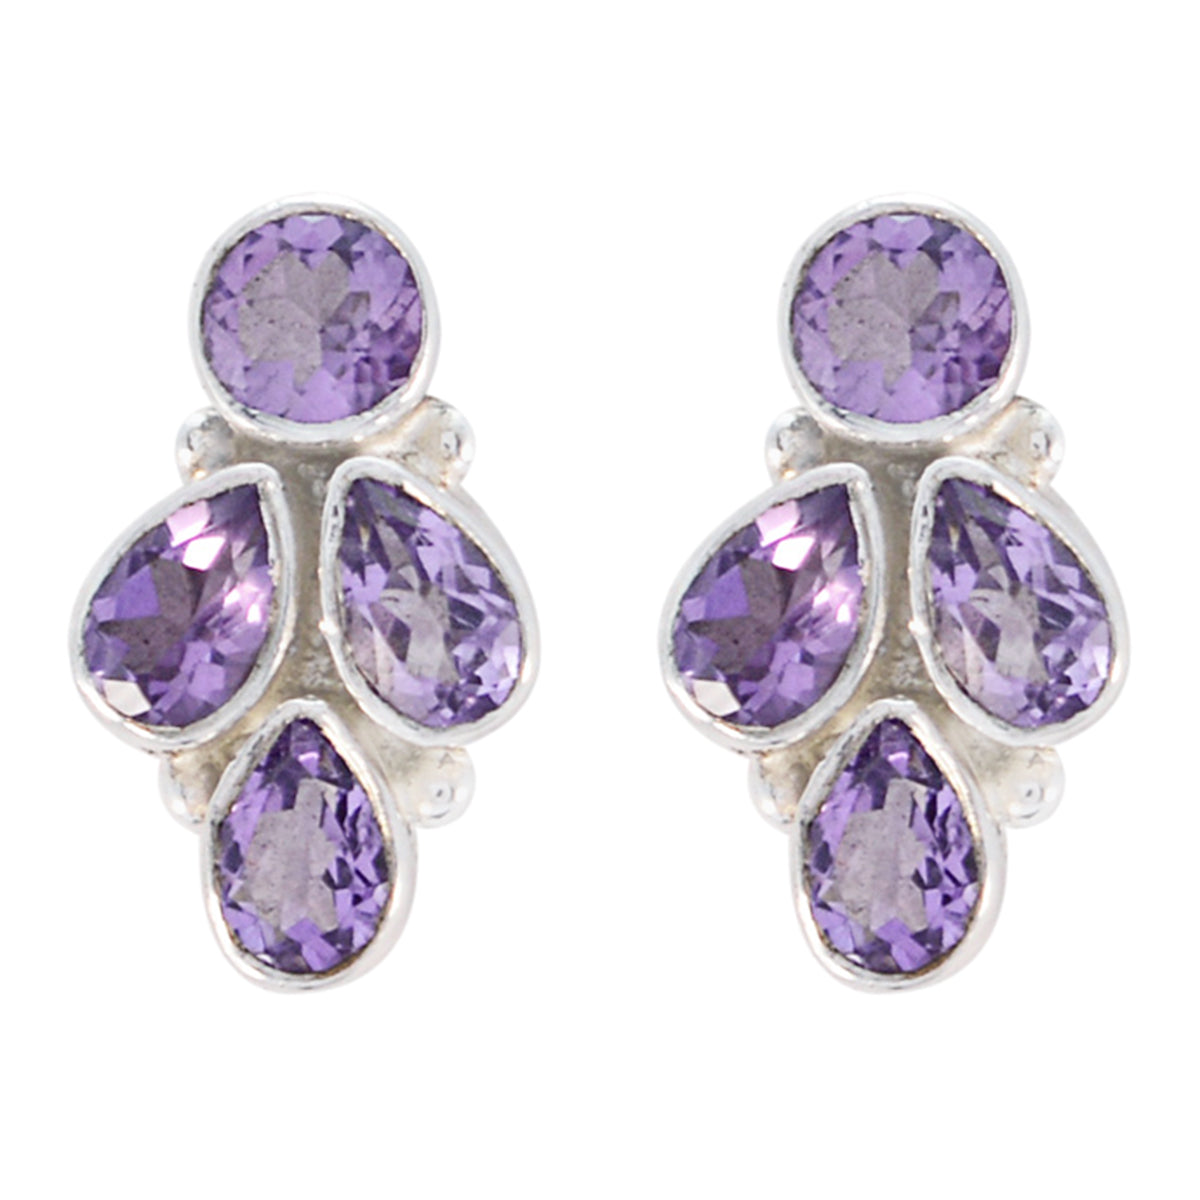 Riyo Nice Gemstone multi shape Faceted Purple Amethyst Silver Earrings gift for sister